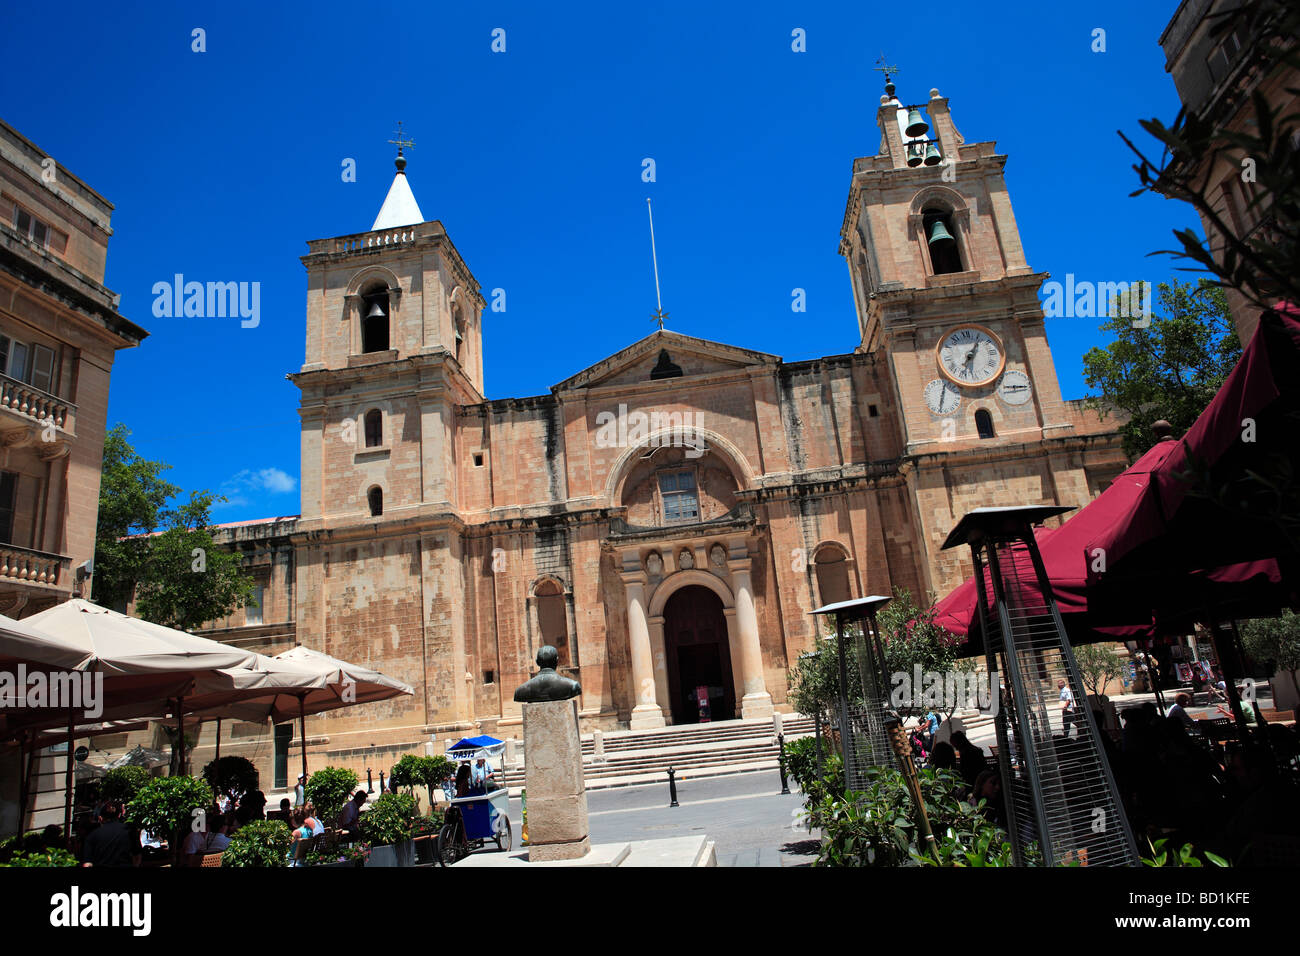 St John's Co-Cathedral, Valletta, Malta Stock Photo